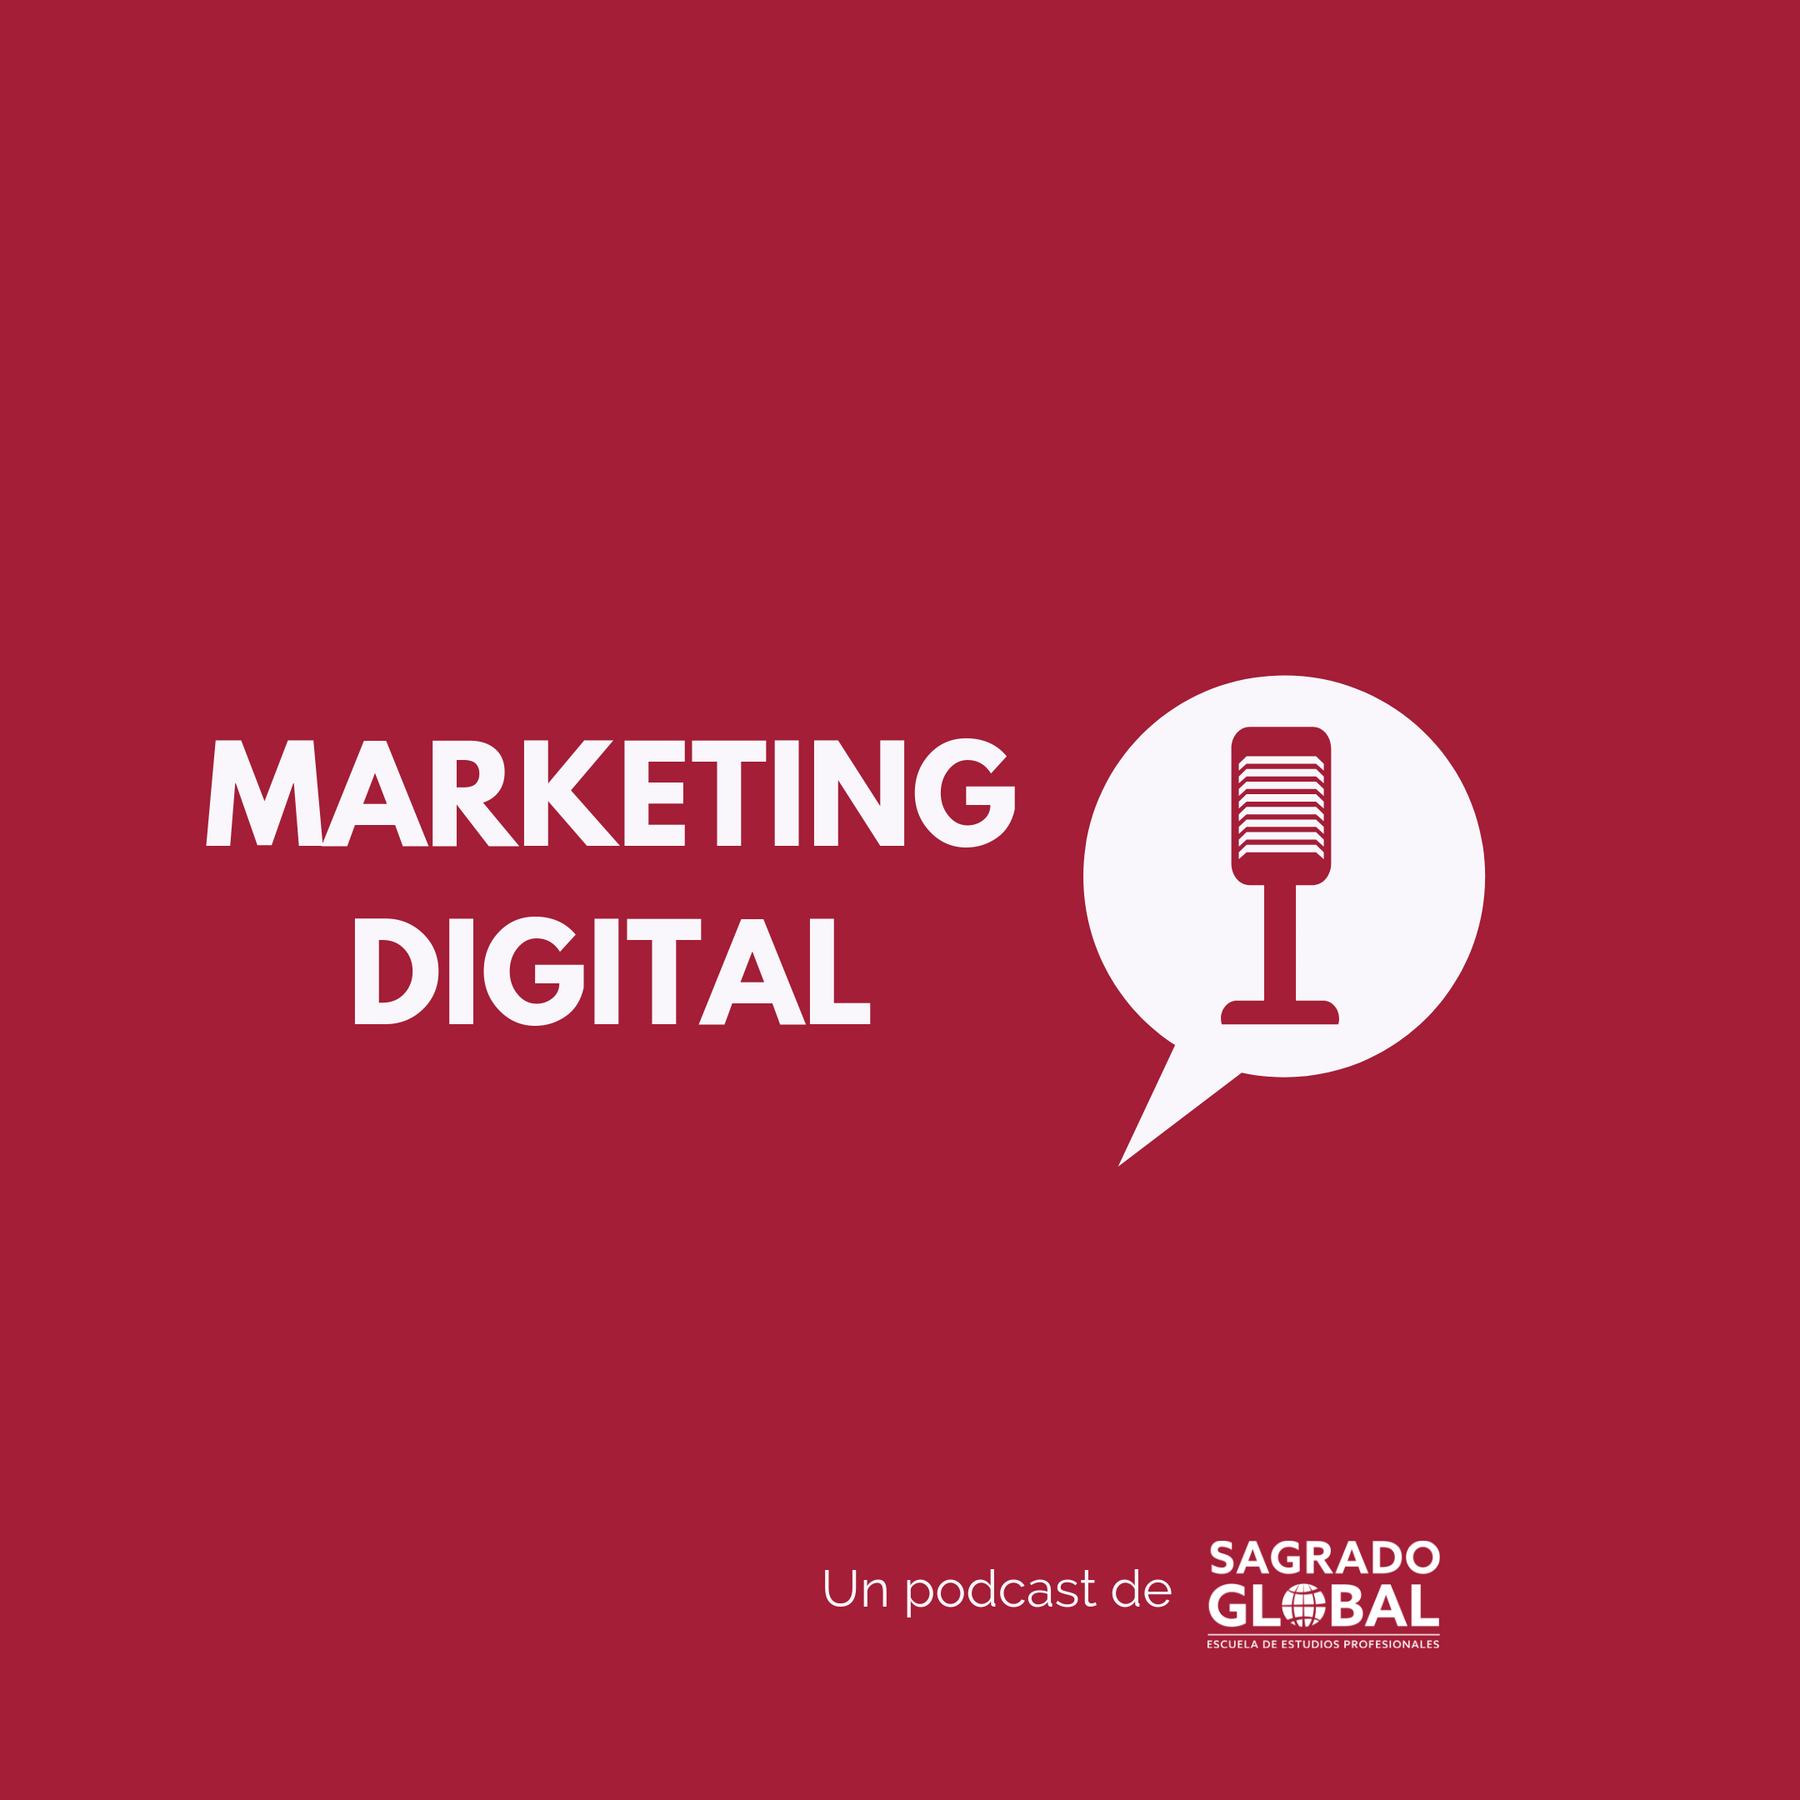 Marketing Digital para crecer tu marca o negocio